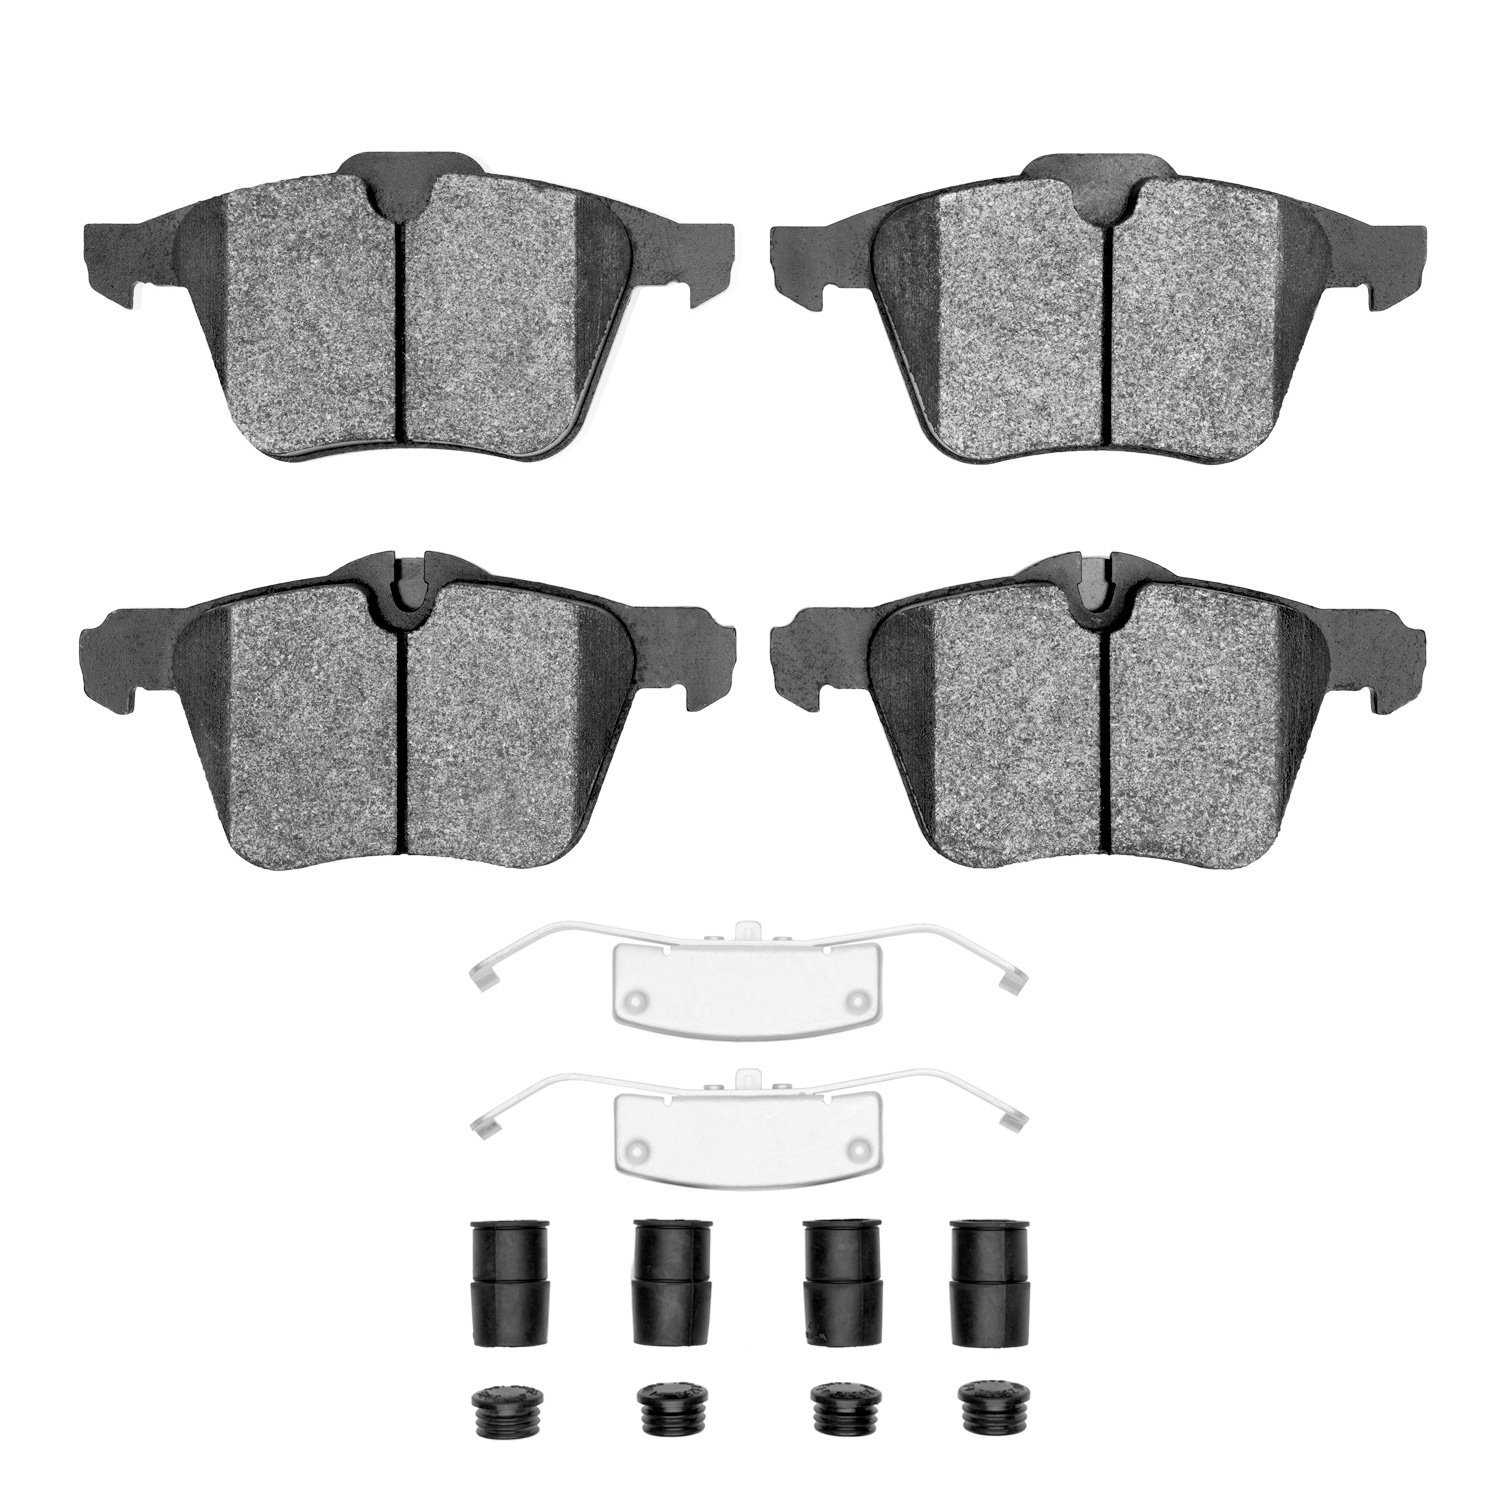 1311-1240-02 3000-Series Semi-Metallic Brake Pads & Hardware Kit, 2010-2019 Jaguar, Position: Front